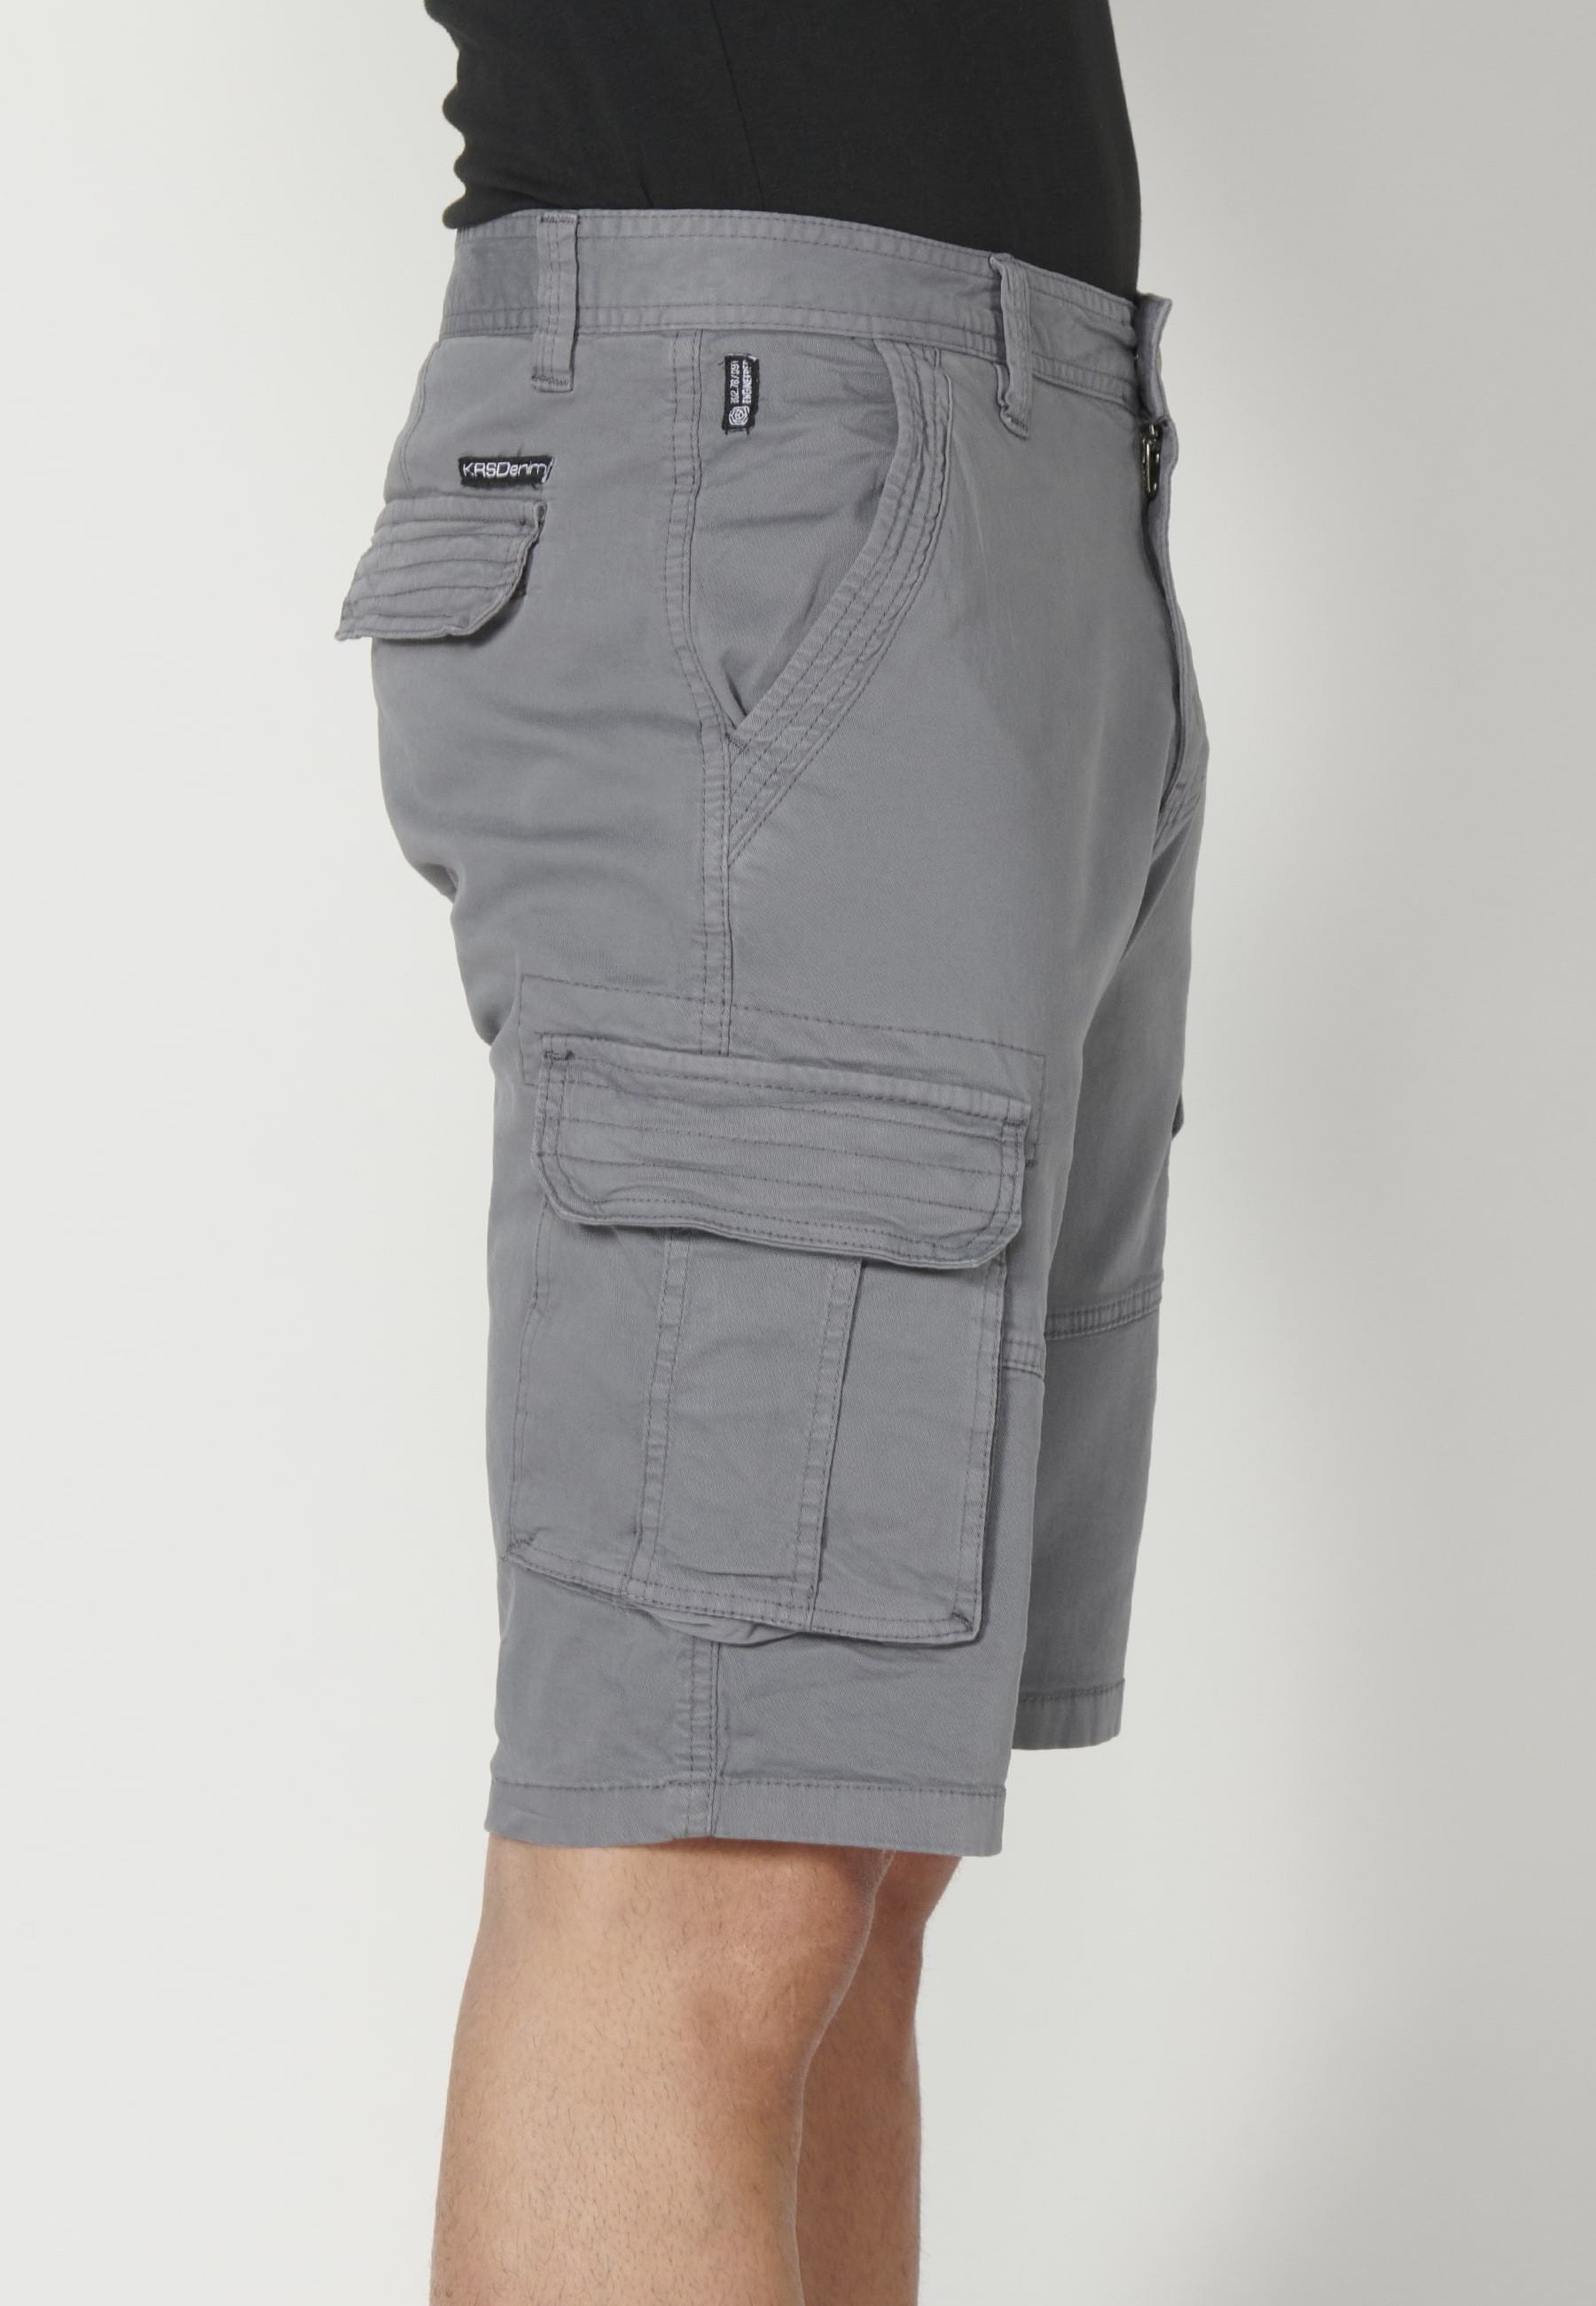 Pantalón corto Bermuda estilo cargo color Gris para Hombre